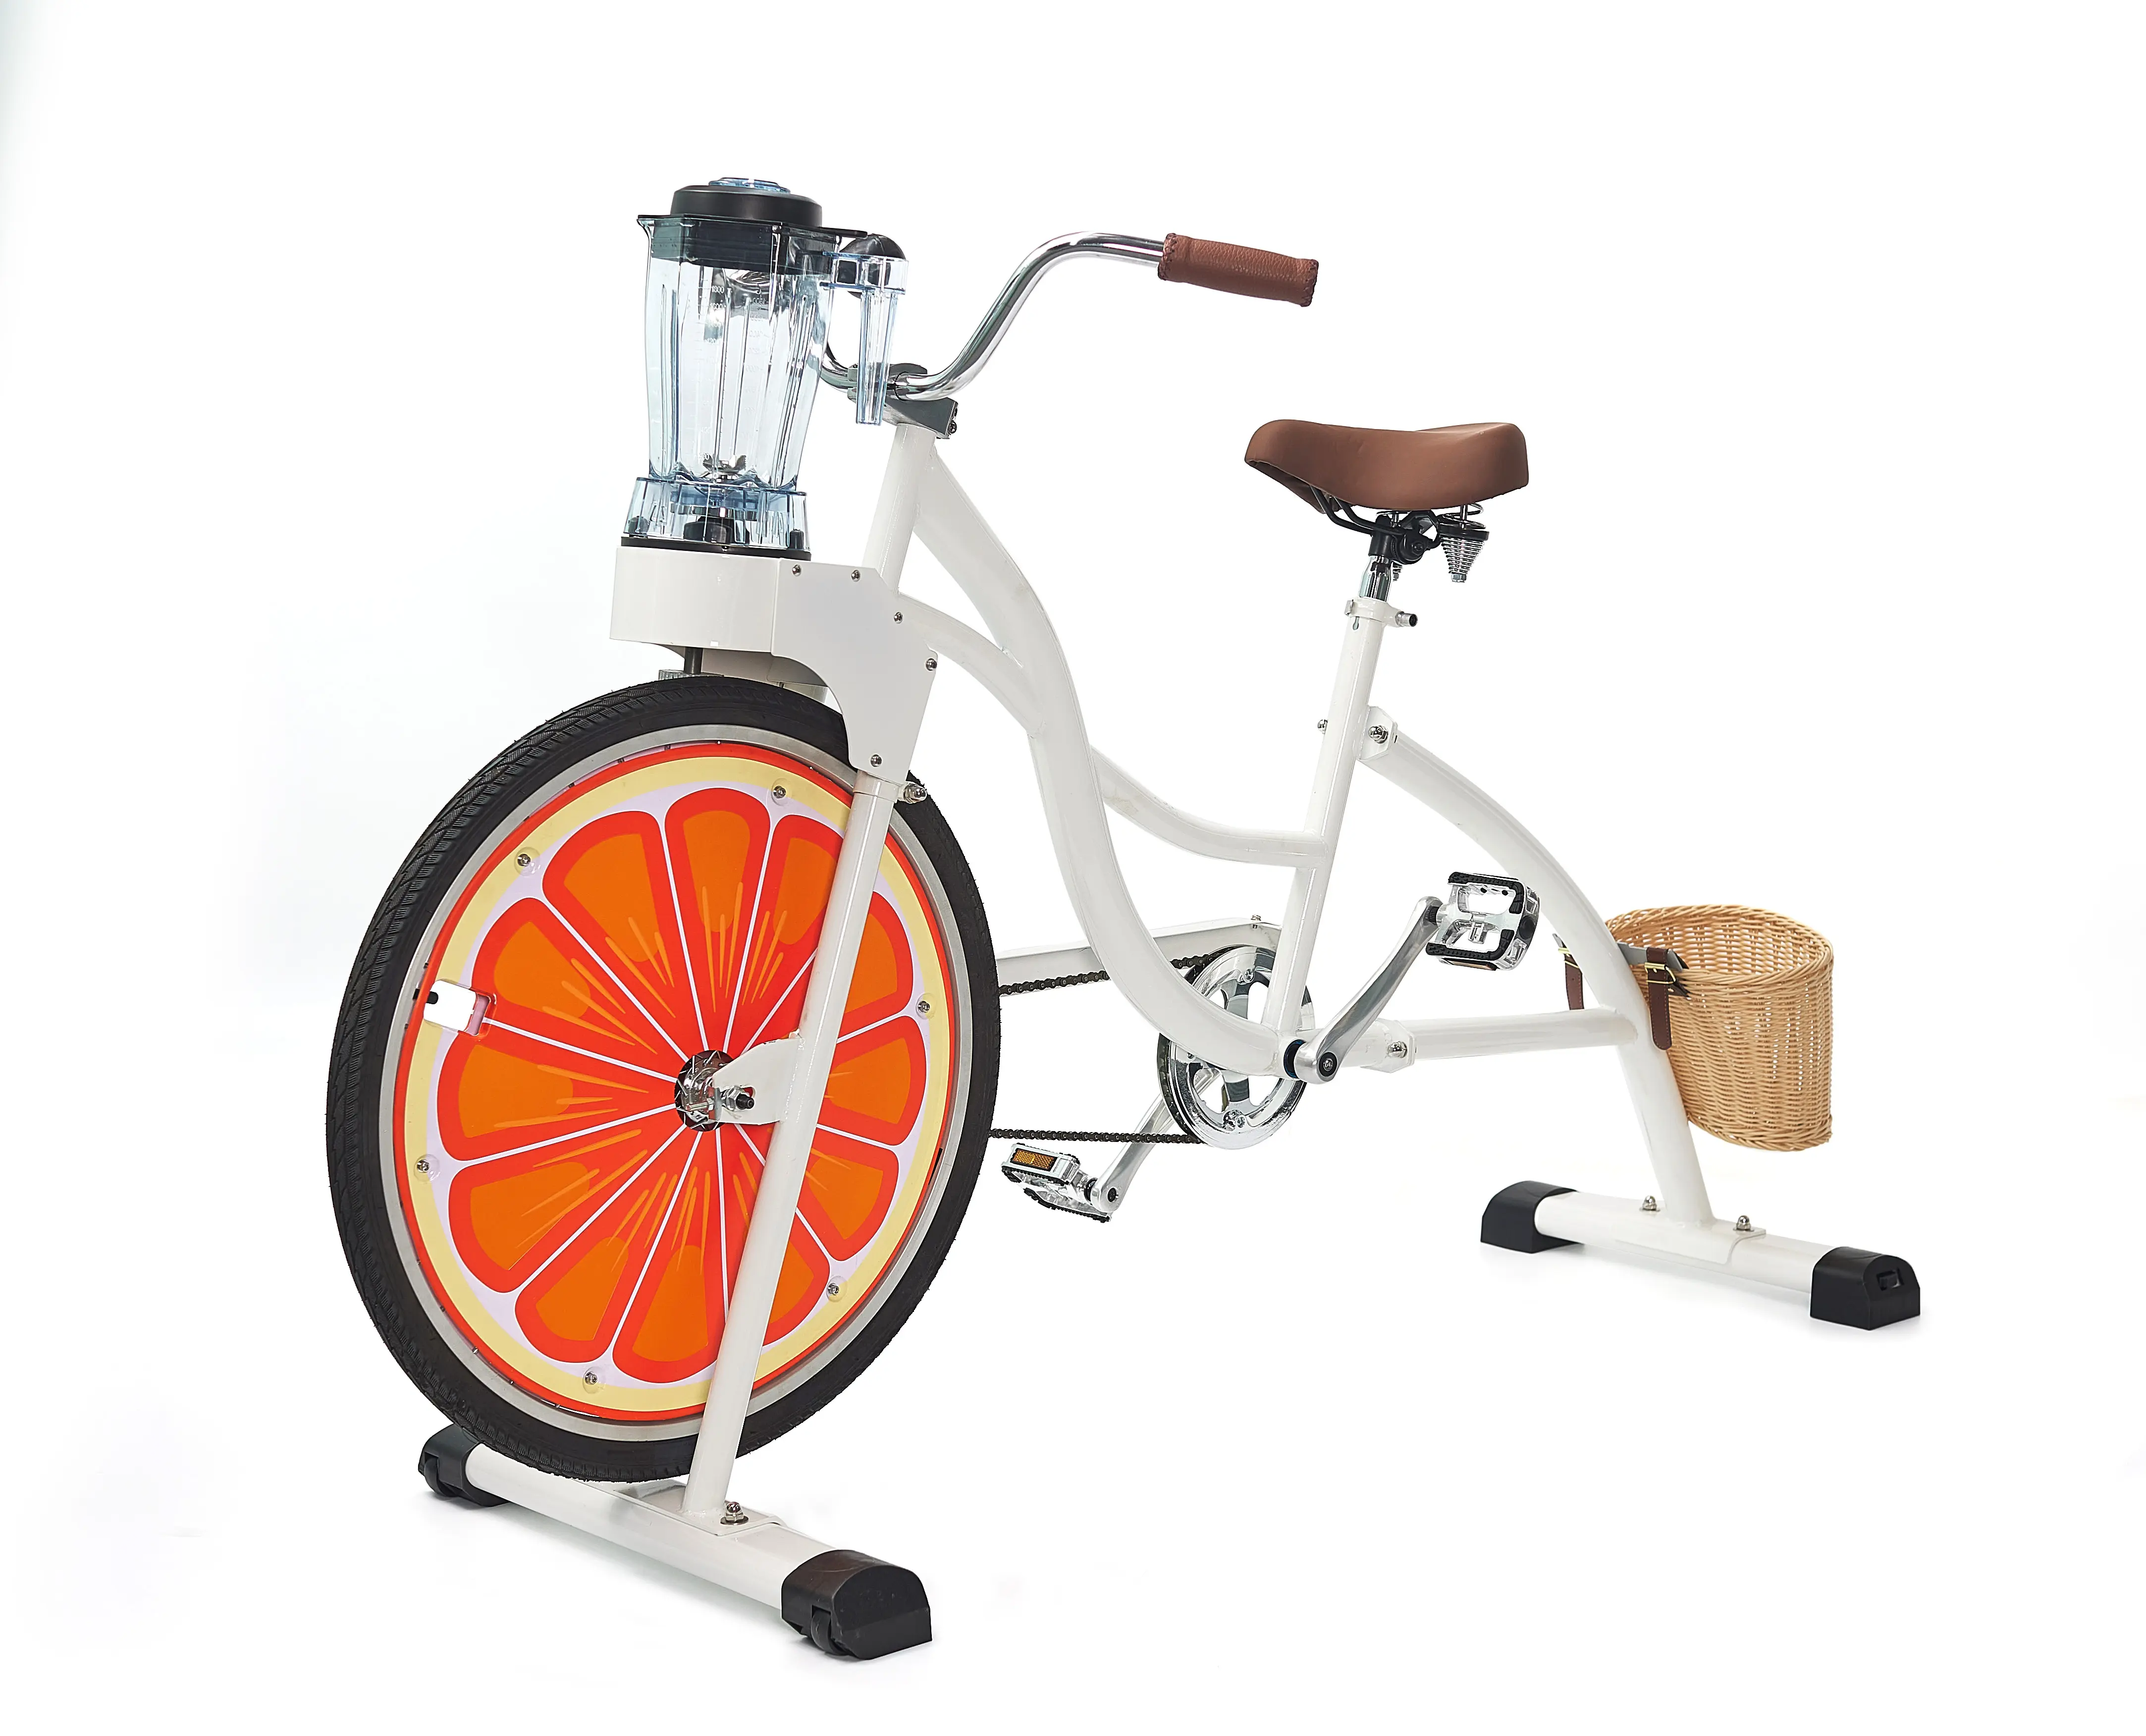 EXIペダルジューサーサイクルカスタマイズチョッパークルーザーステーショナリーパワーオレンジジューサー商用自転車広告